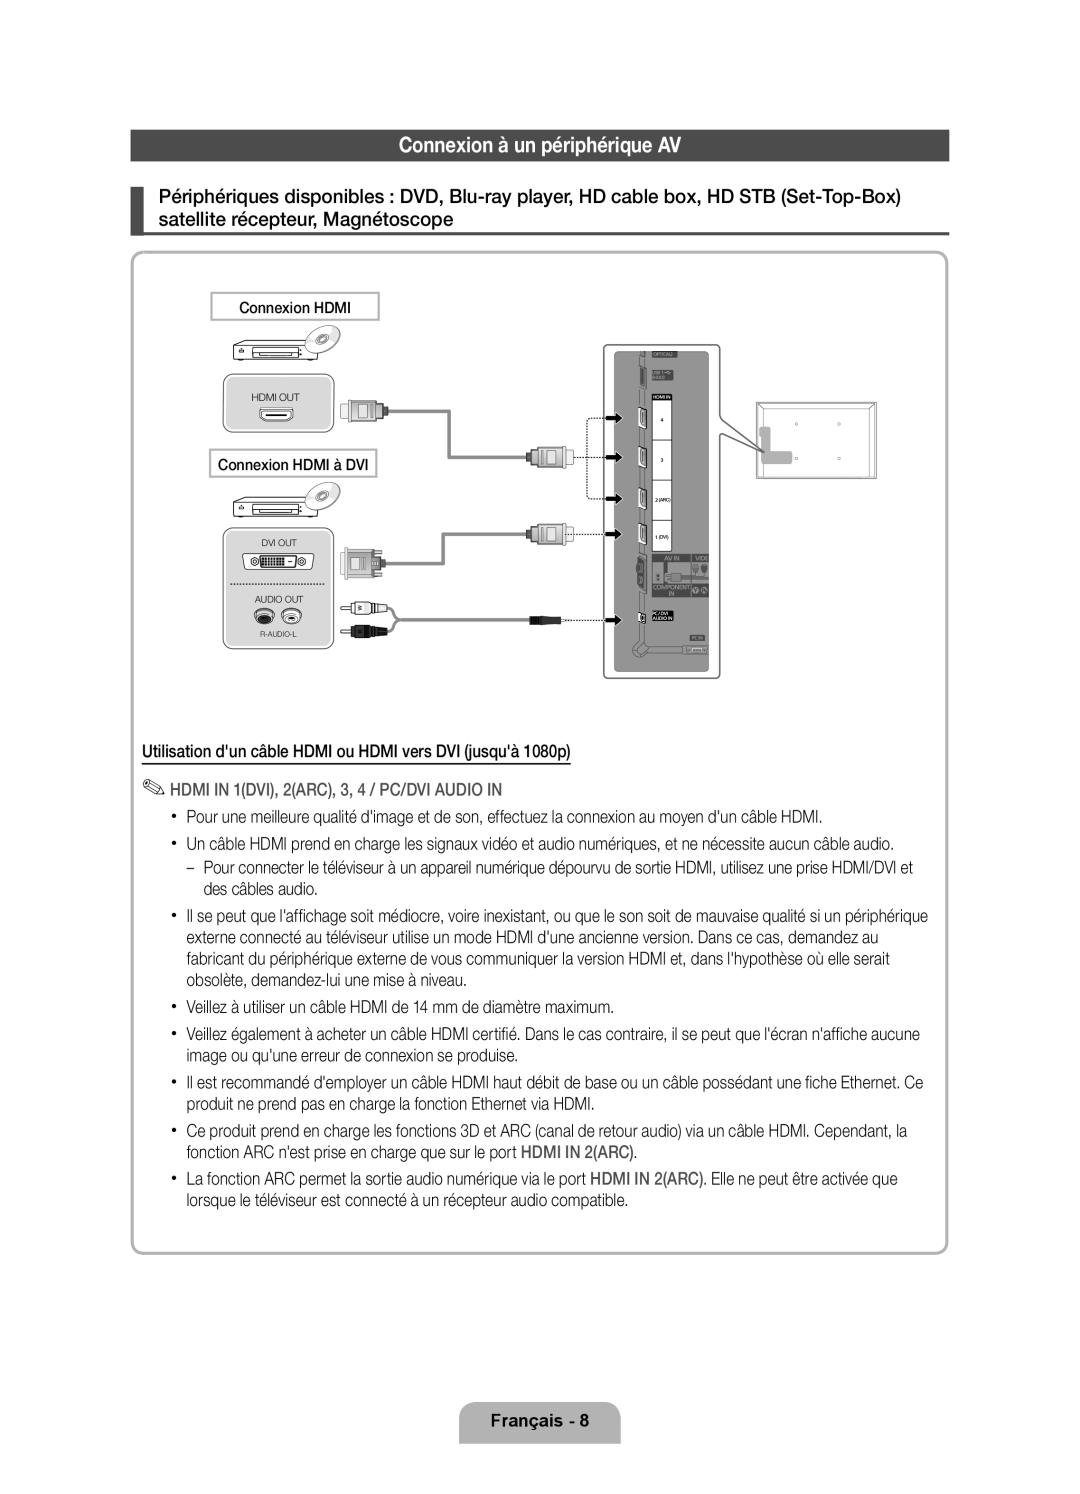 Samsung UE40D6530WSXZG manual Connexion à un périphérique AV, HDMI IN 1DVI, 2ARC, 3, 4 / PC/DVI AUDIO IN, Français 